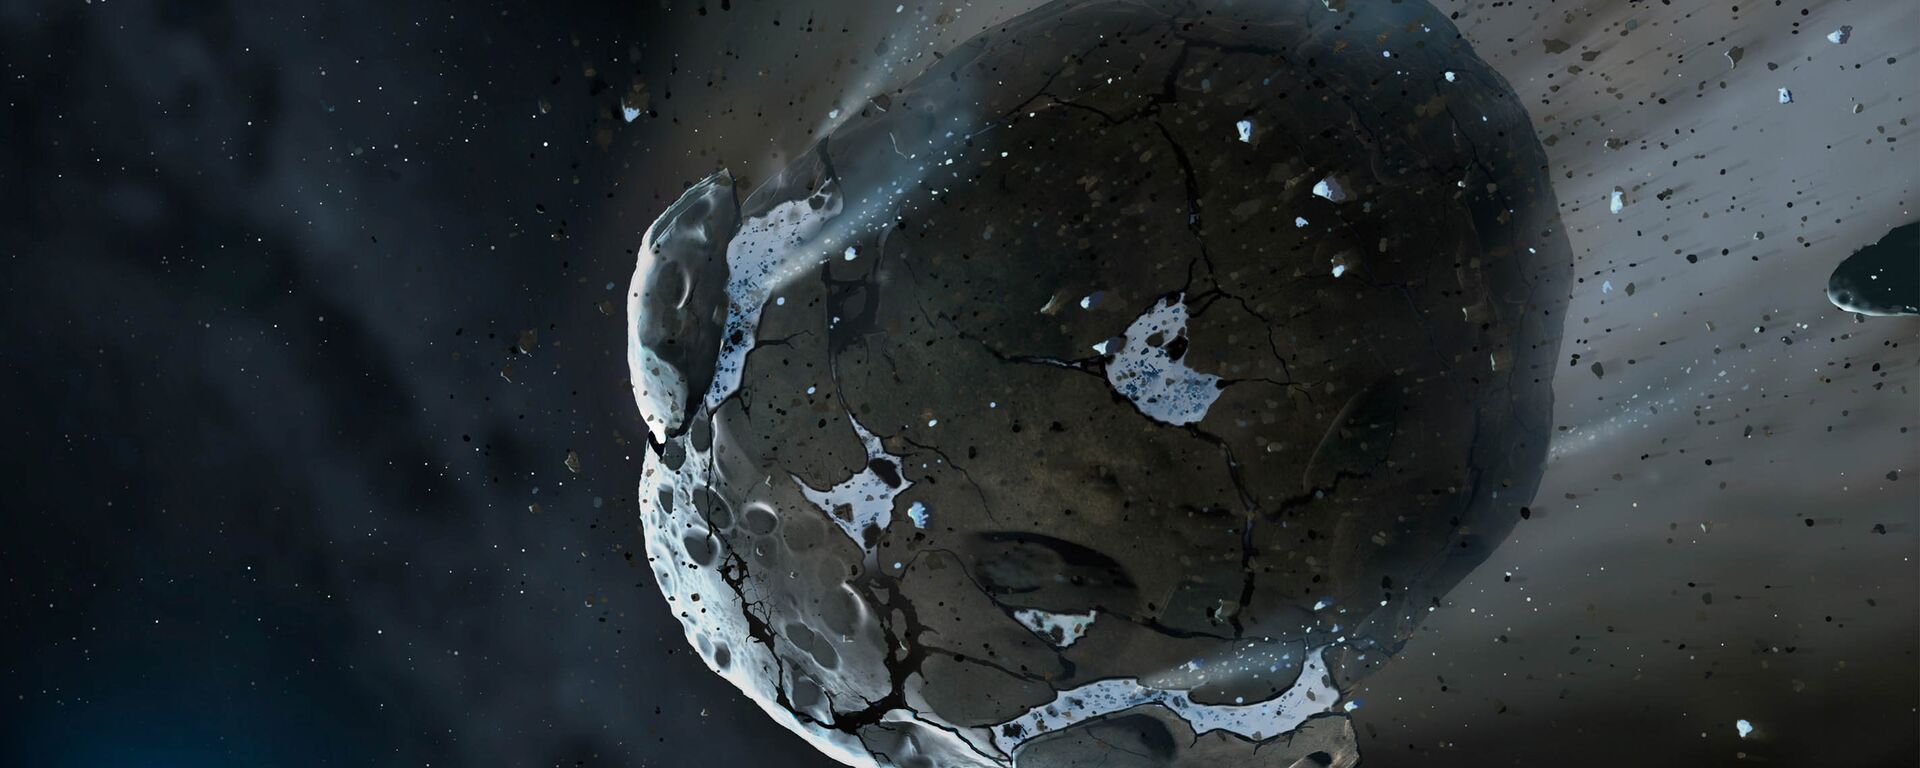 Астероид, архивное фото - Sputnik Армения, 1920, 20.03.2021